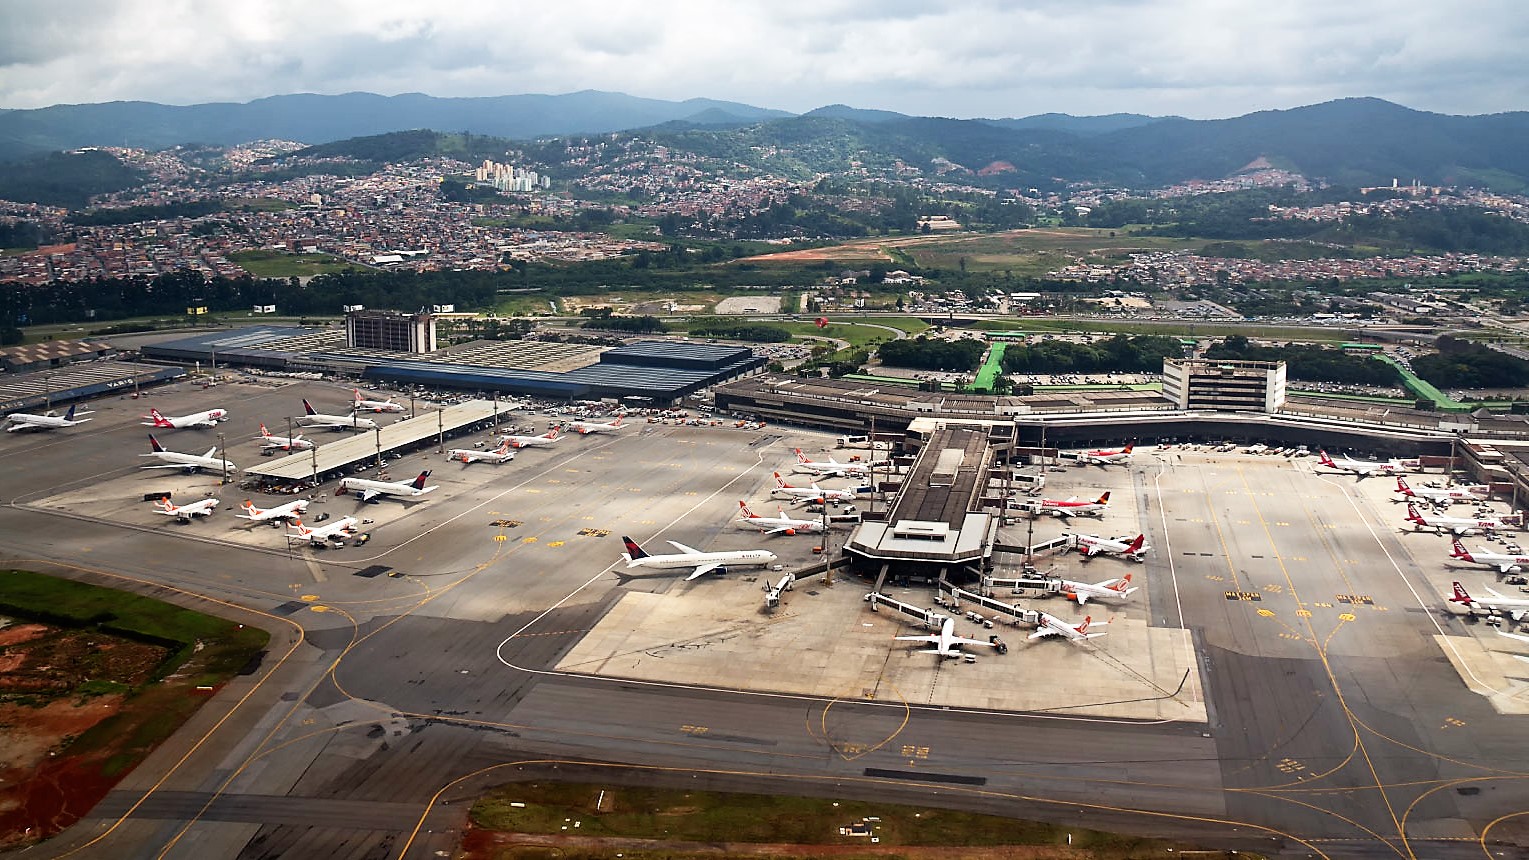 Les aéroports du Brésil - São Paulo Guarulhos